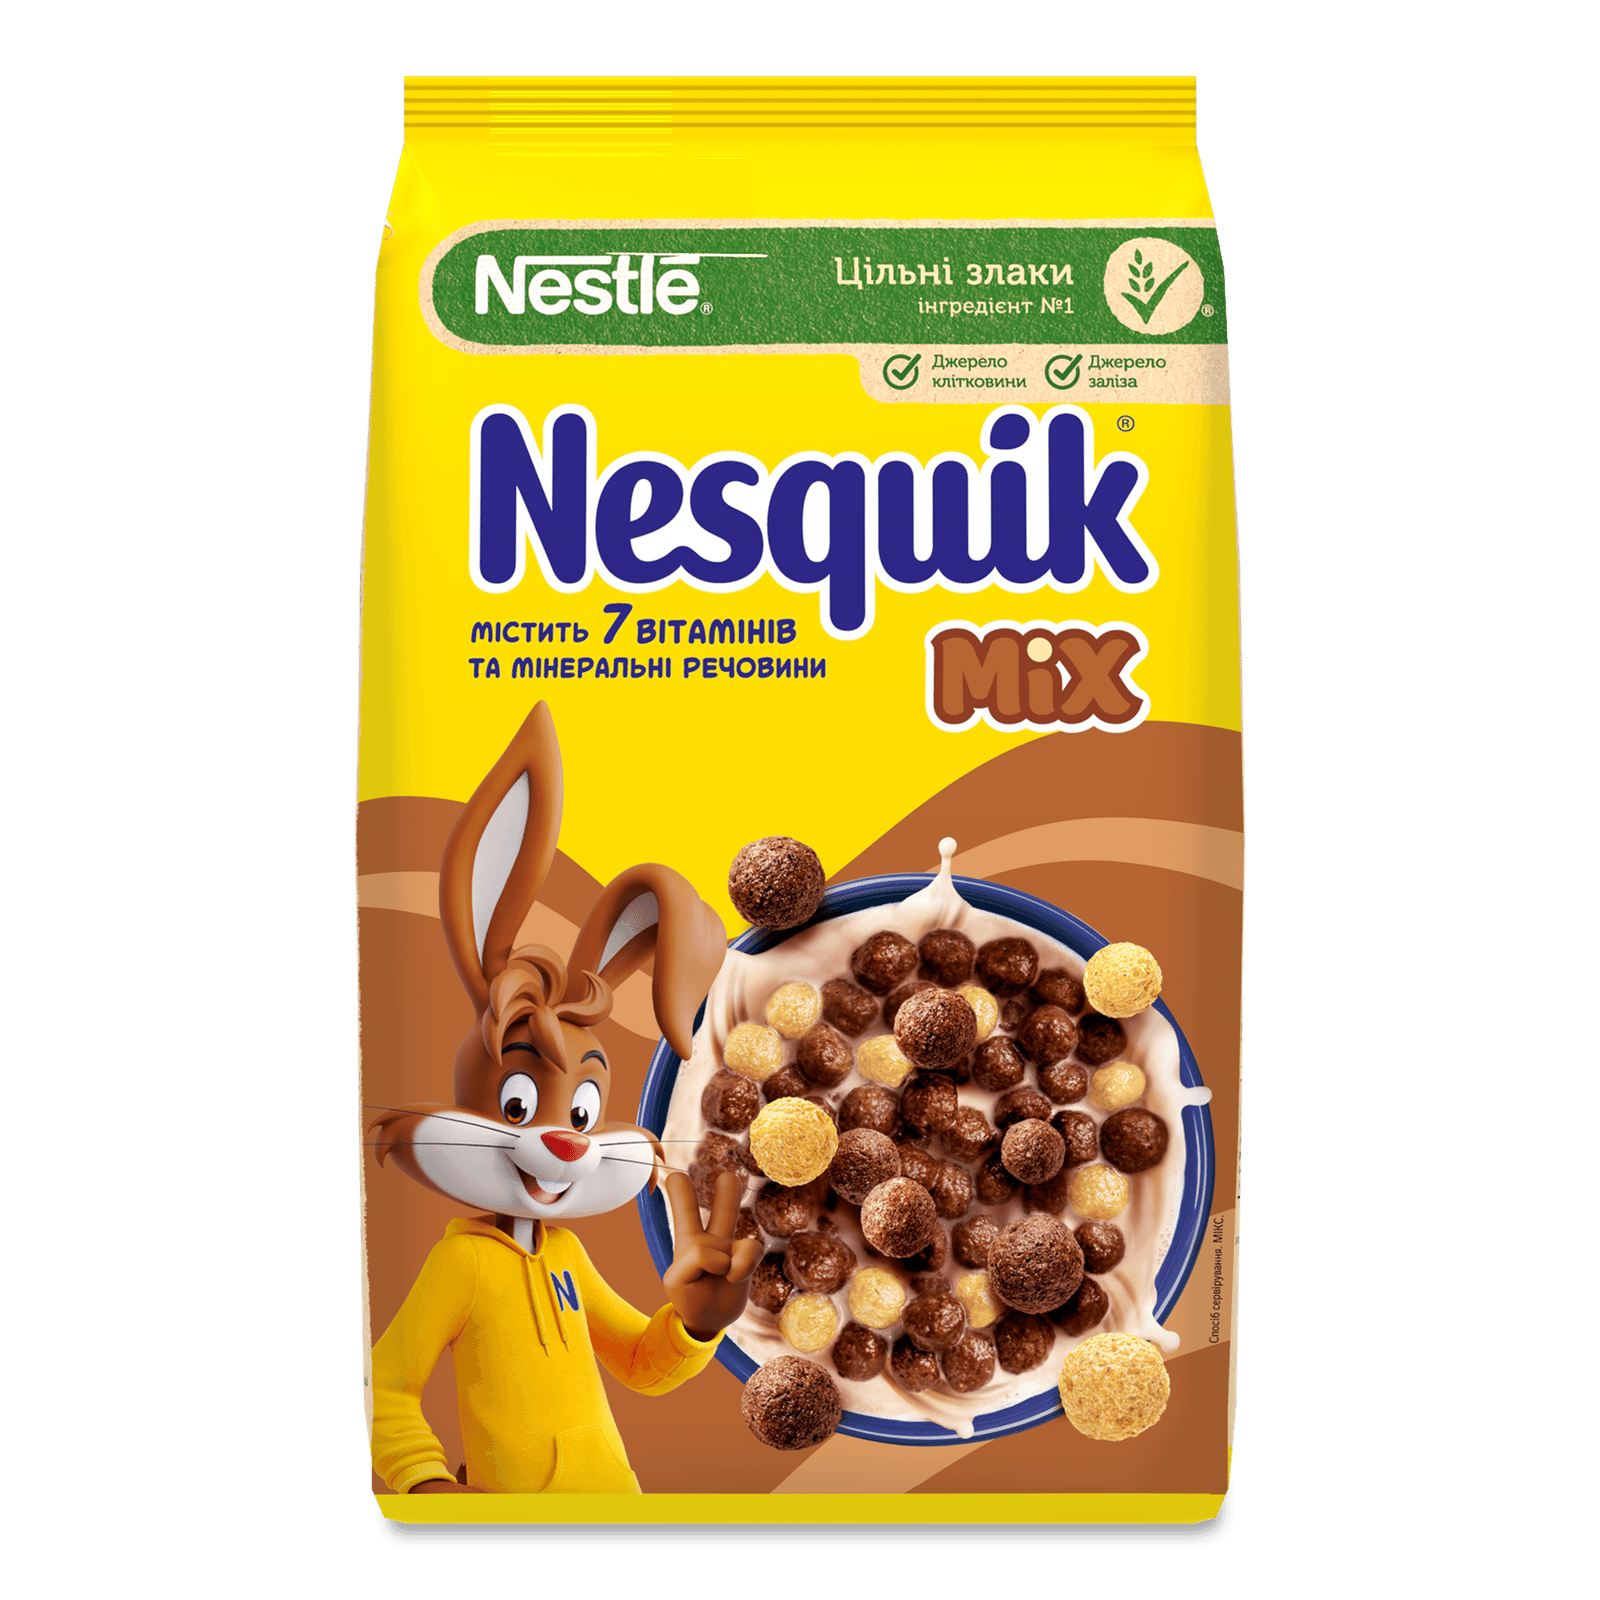 Сніданок сухий Nesquik Mix з вітамінно-мінеральними речовинами - 1